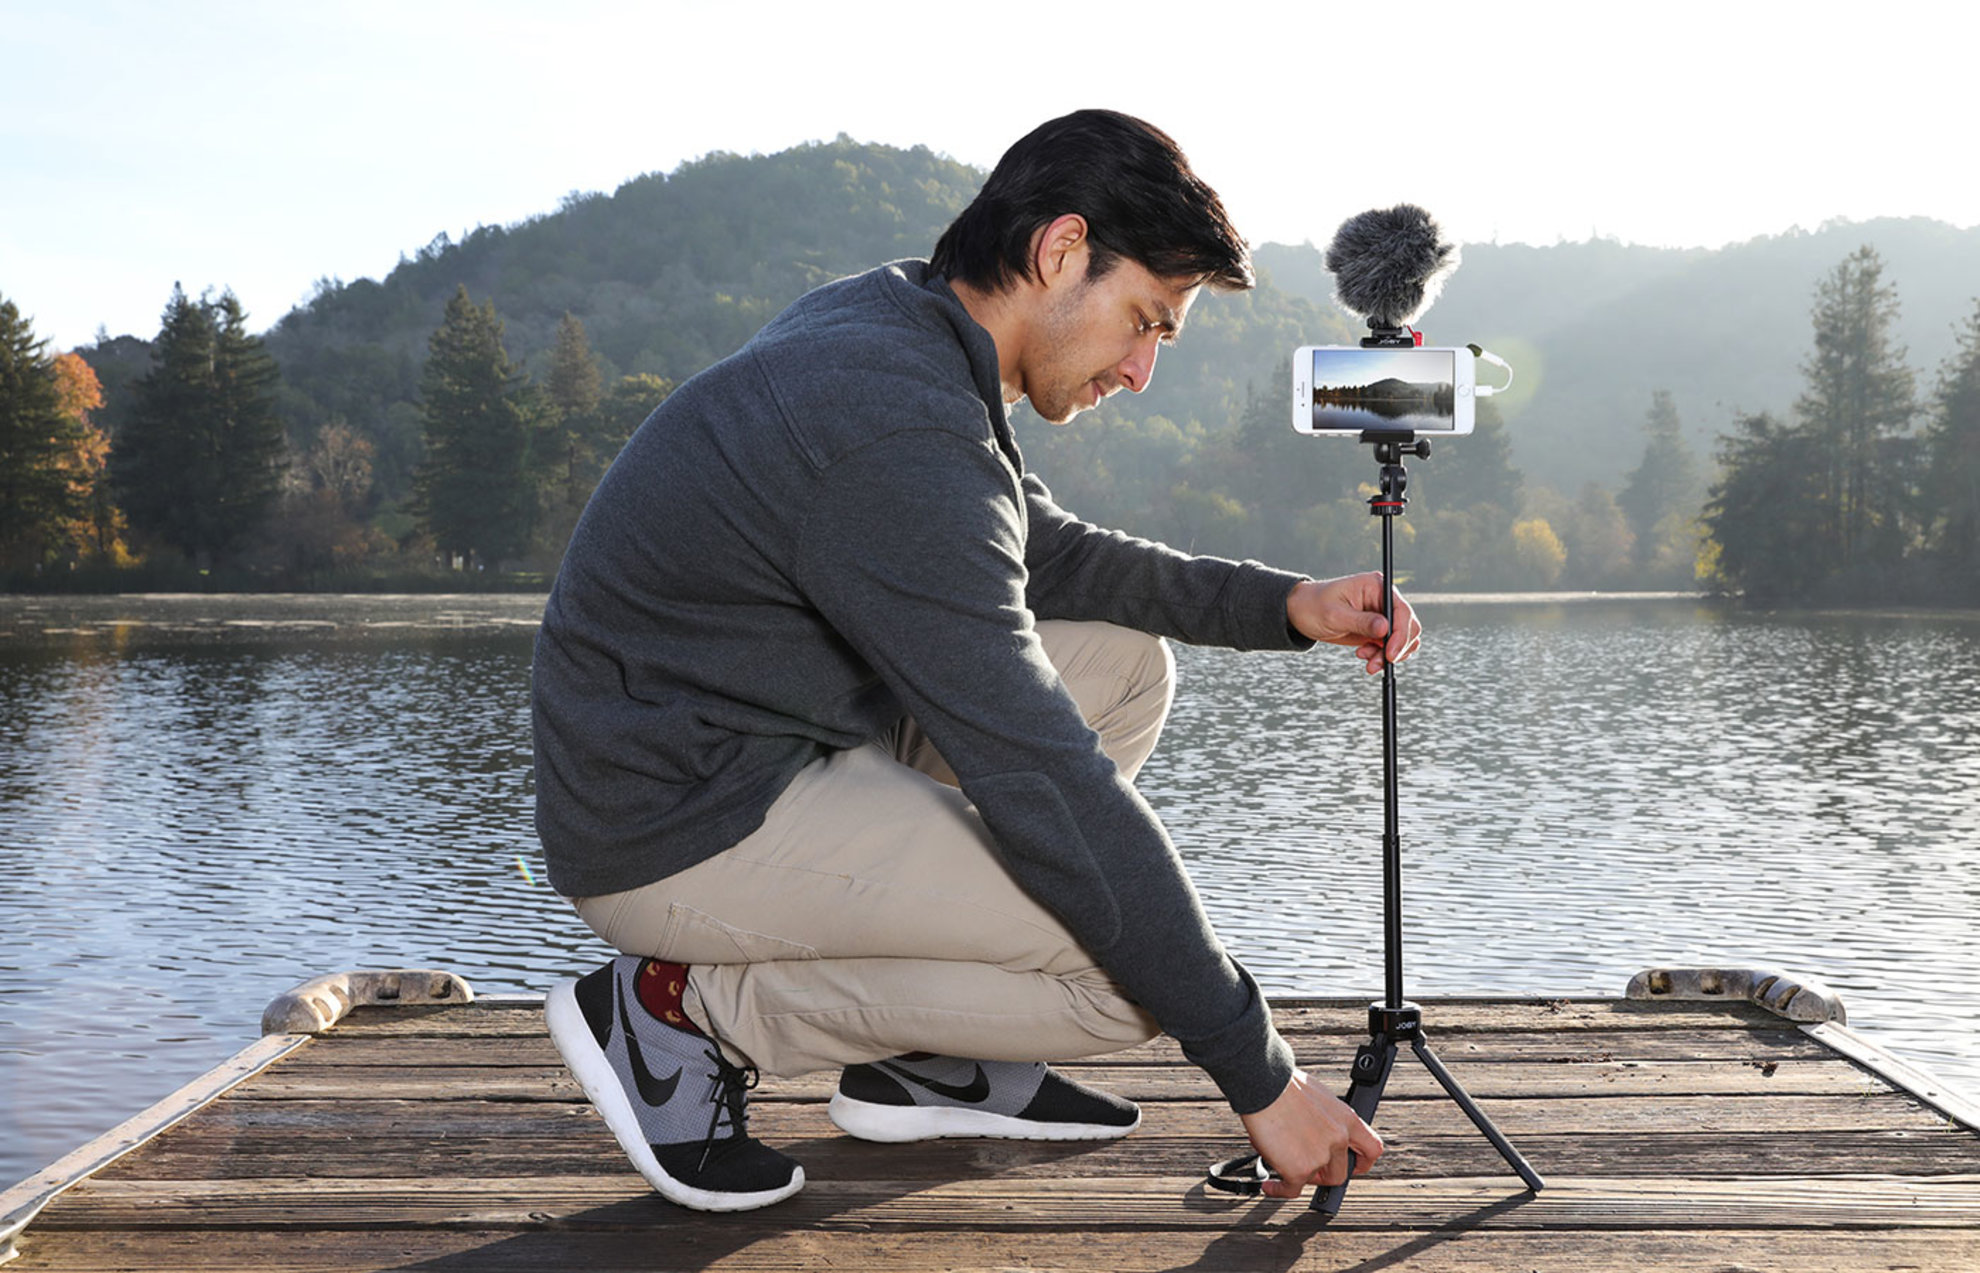 Univerzální teleskopický tripod a selfie tyč Joby GripTight Pro TelePod v 1 kompaktním nástroji nabízí opravdu široké příslušenství a je speciálně určený pro smartphony, CSC fotoaparáty a akční kamery do hmotnosti 1 kg.